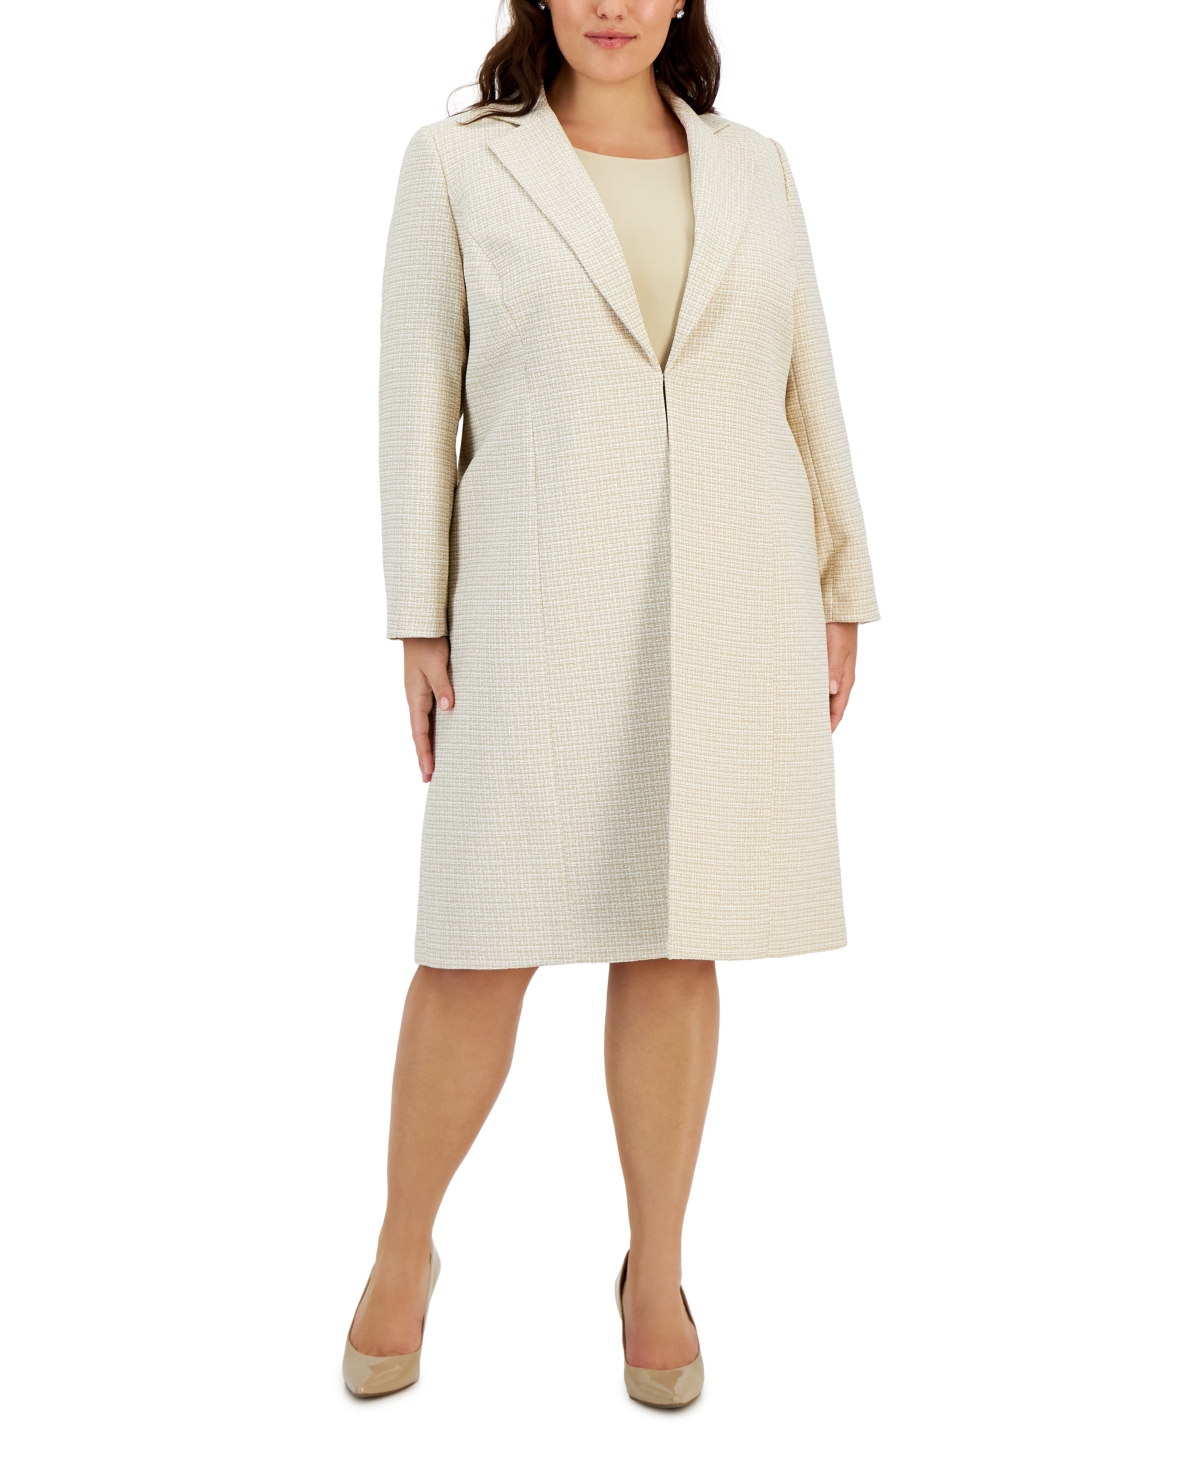 Le Suit Plus Size Tweed Notch-Collar Topper & Sheath Dress